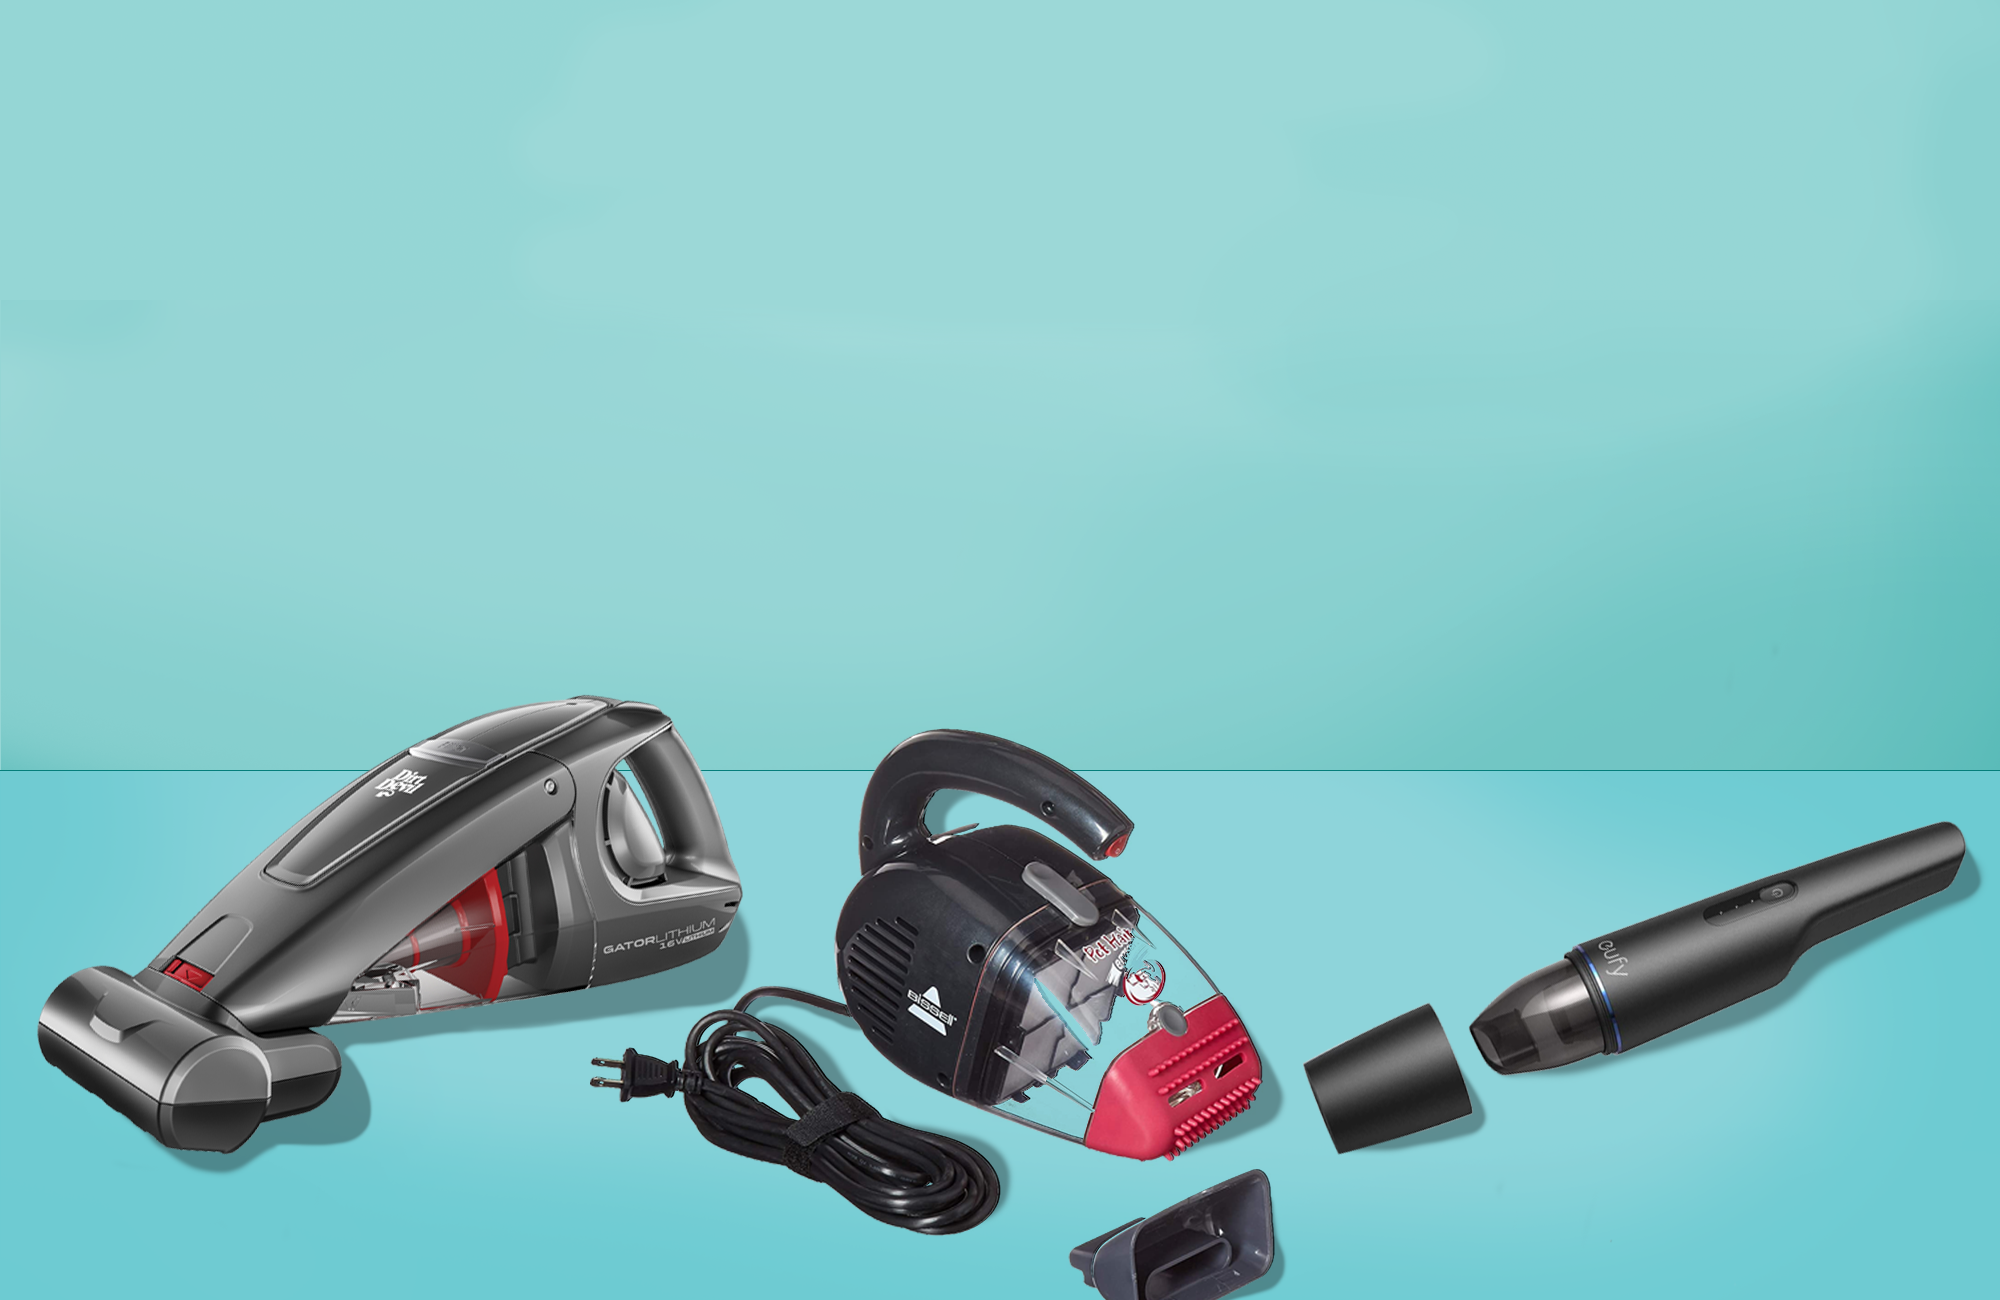 12 Best Handheld Vacuums Reviews 2020 